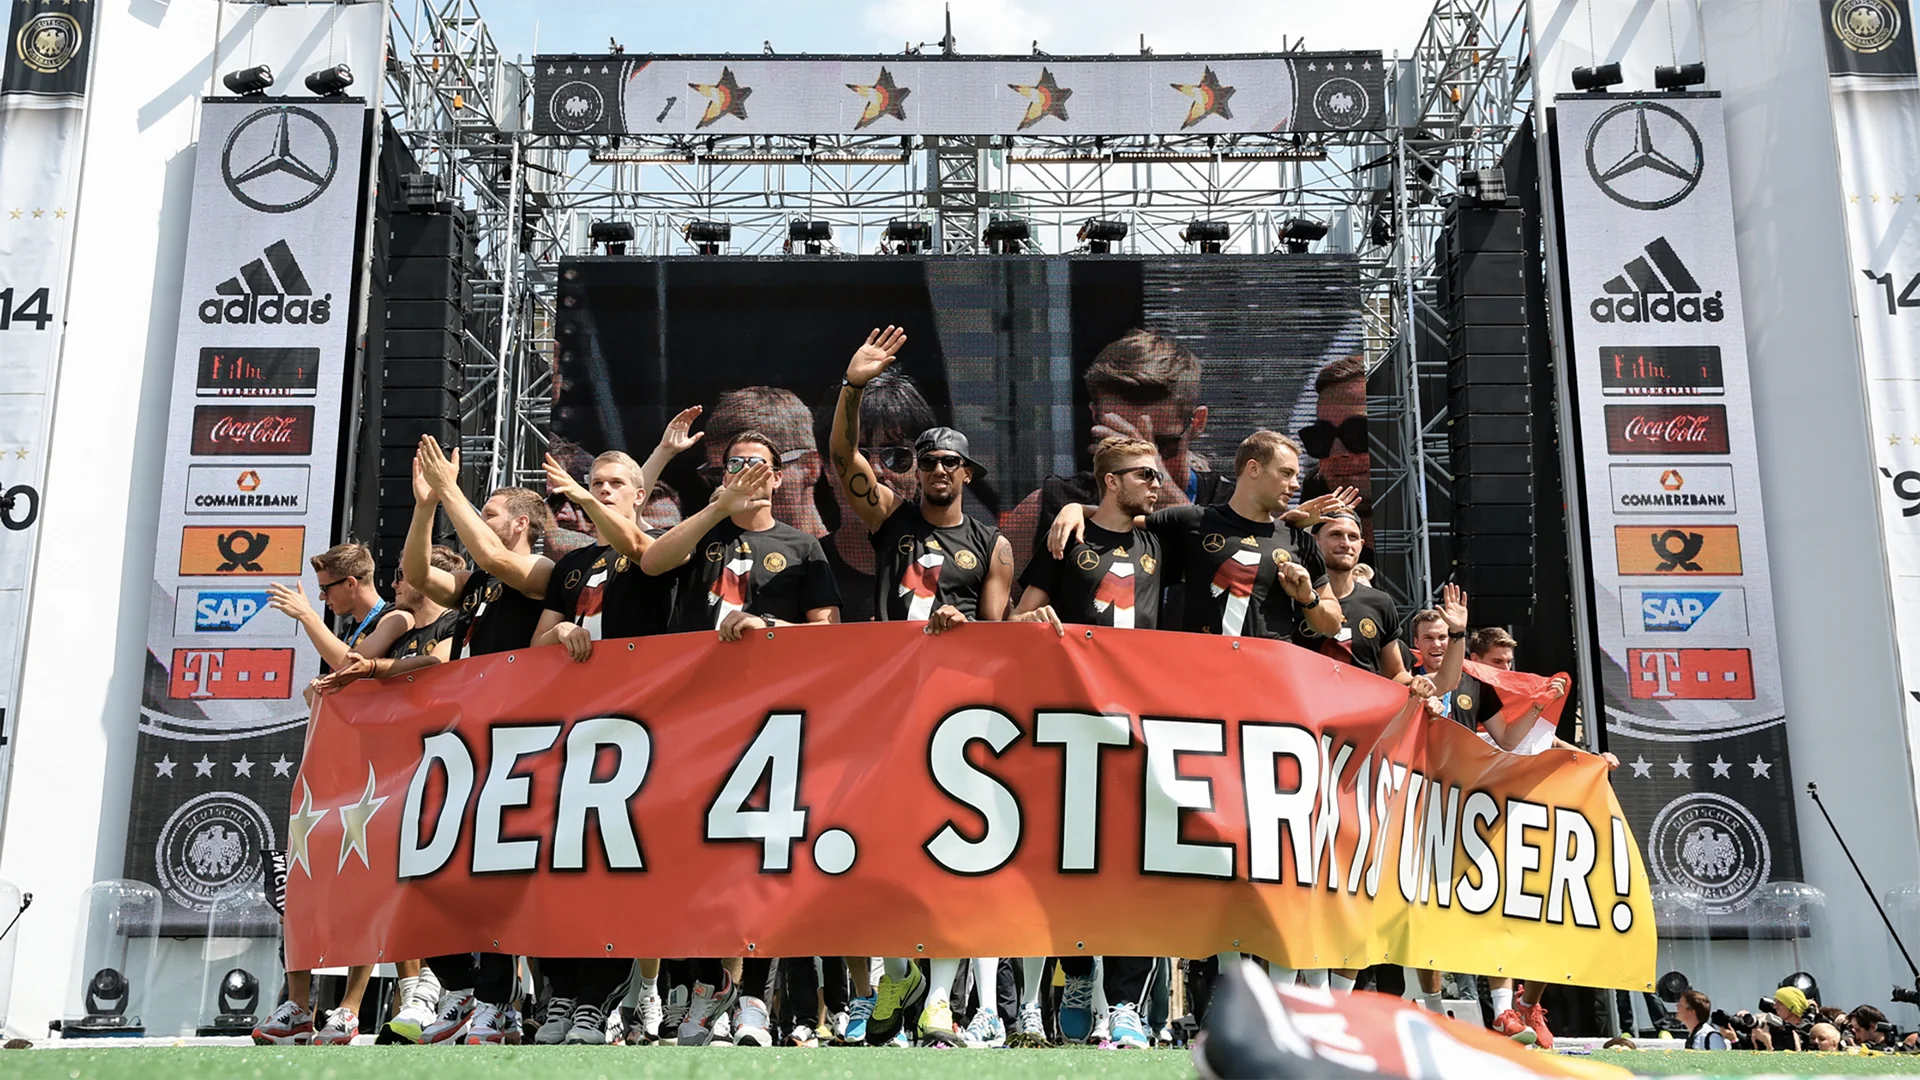 Ein Bild zeigt die deutsche Nationalmannschaft am feiern bei 